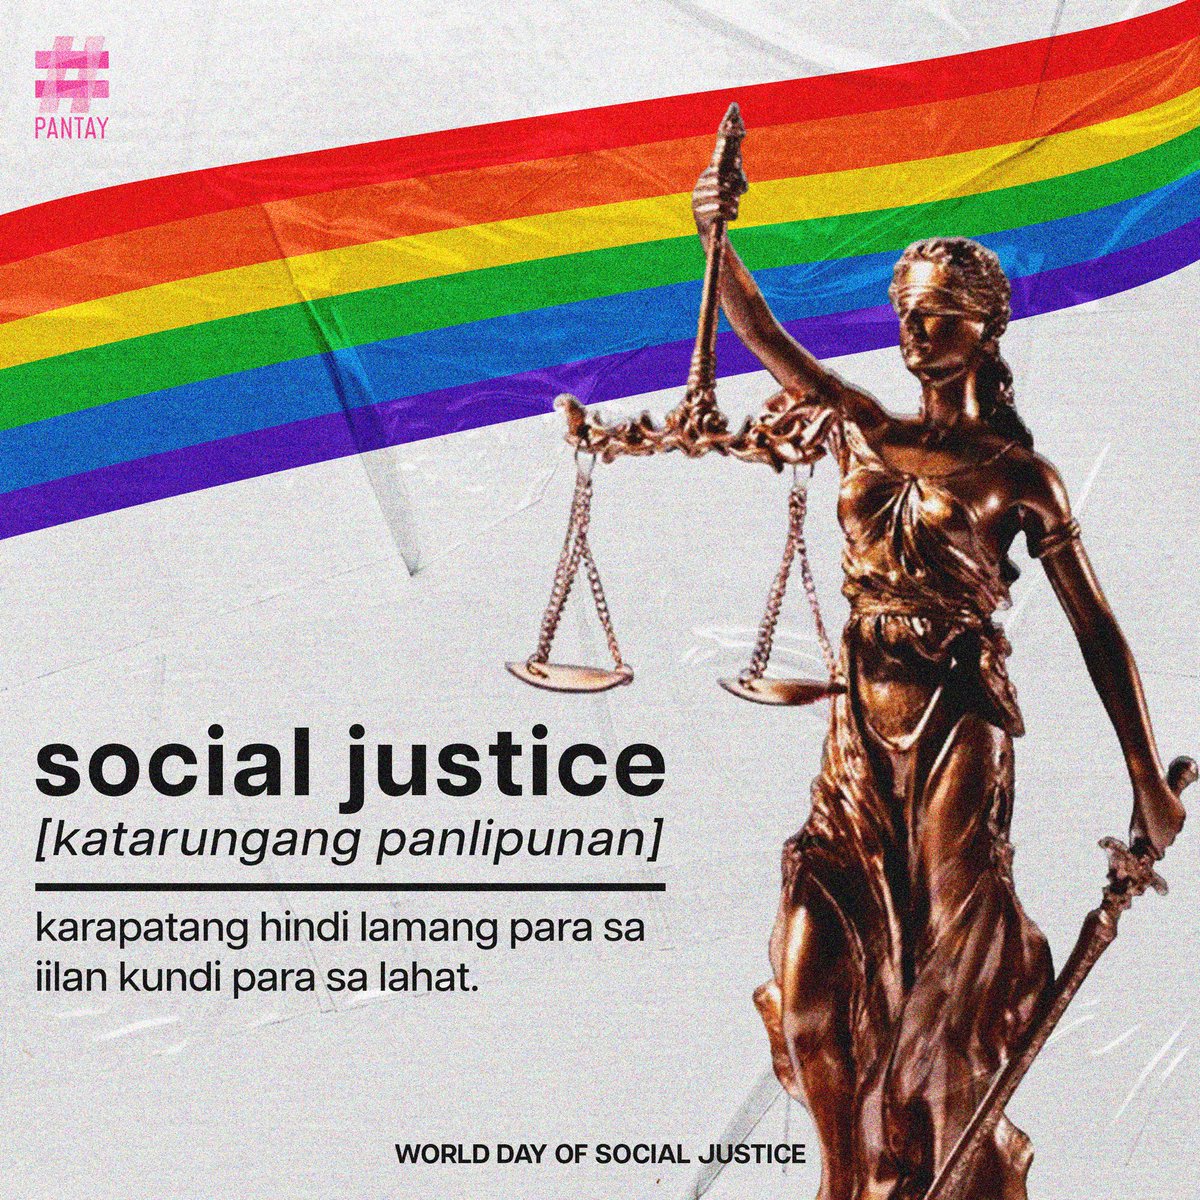 Hindi tayo tunay na pantay-pantay kung ang mga karapatan ay para lamang sa iilan. ✊🏽🌈🏳️‍⚧️

#SocialJusticeDay
#PANTAYtayo
#Equality4All
#PANTAY